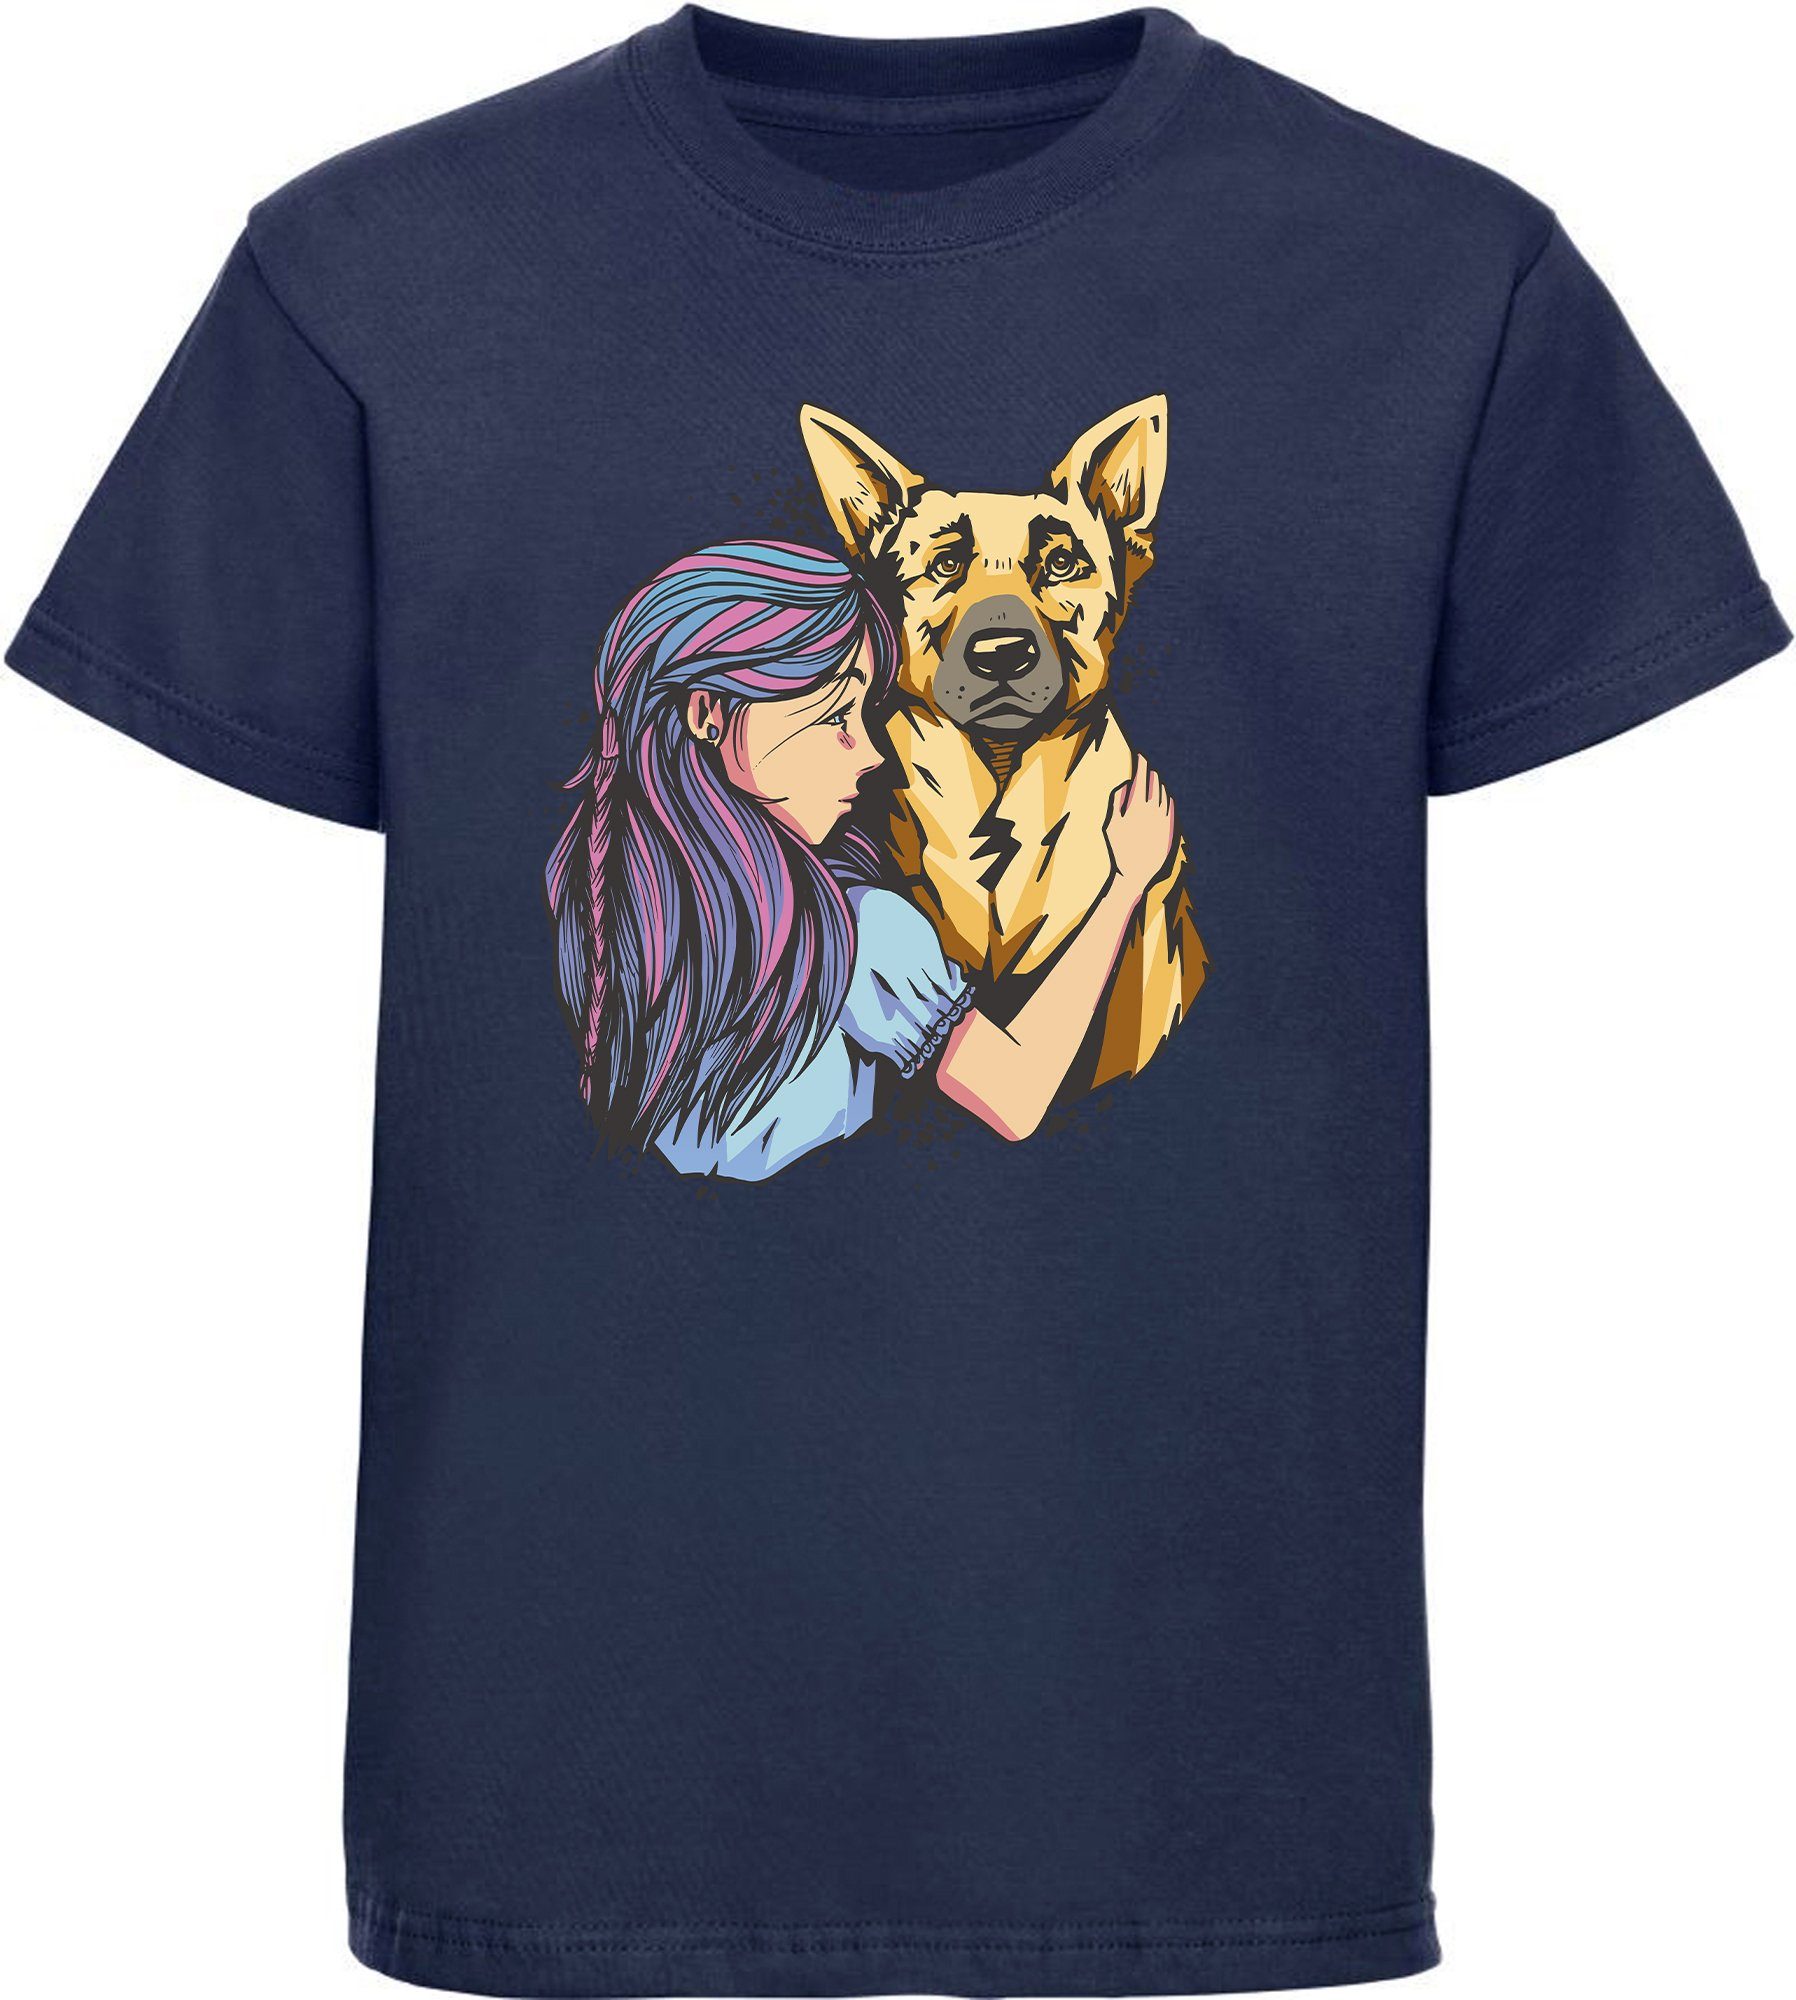 MyDesign24 T-Shirt Kinder Hunde Print Shirt bedruckt - Schäferhund mit Mädchen Baumwollshirt mit Aufdruck, i258 navy blau